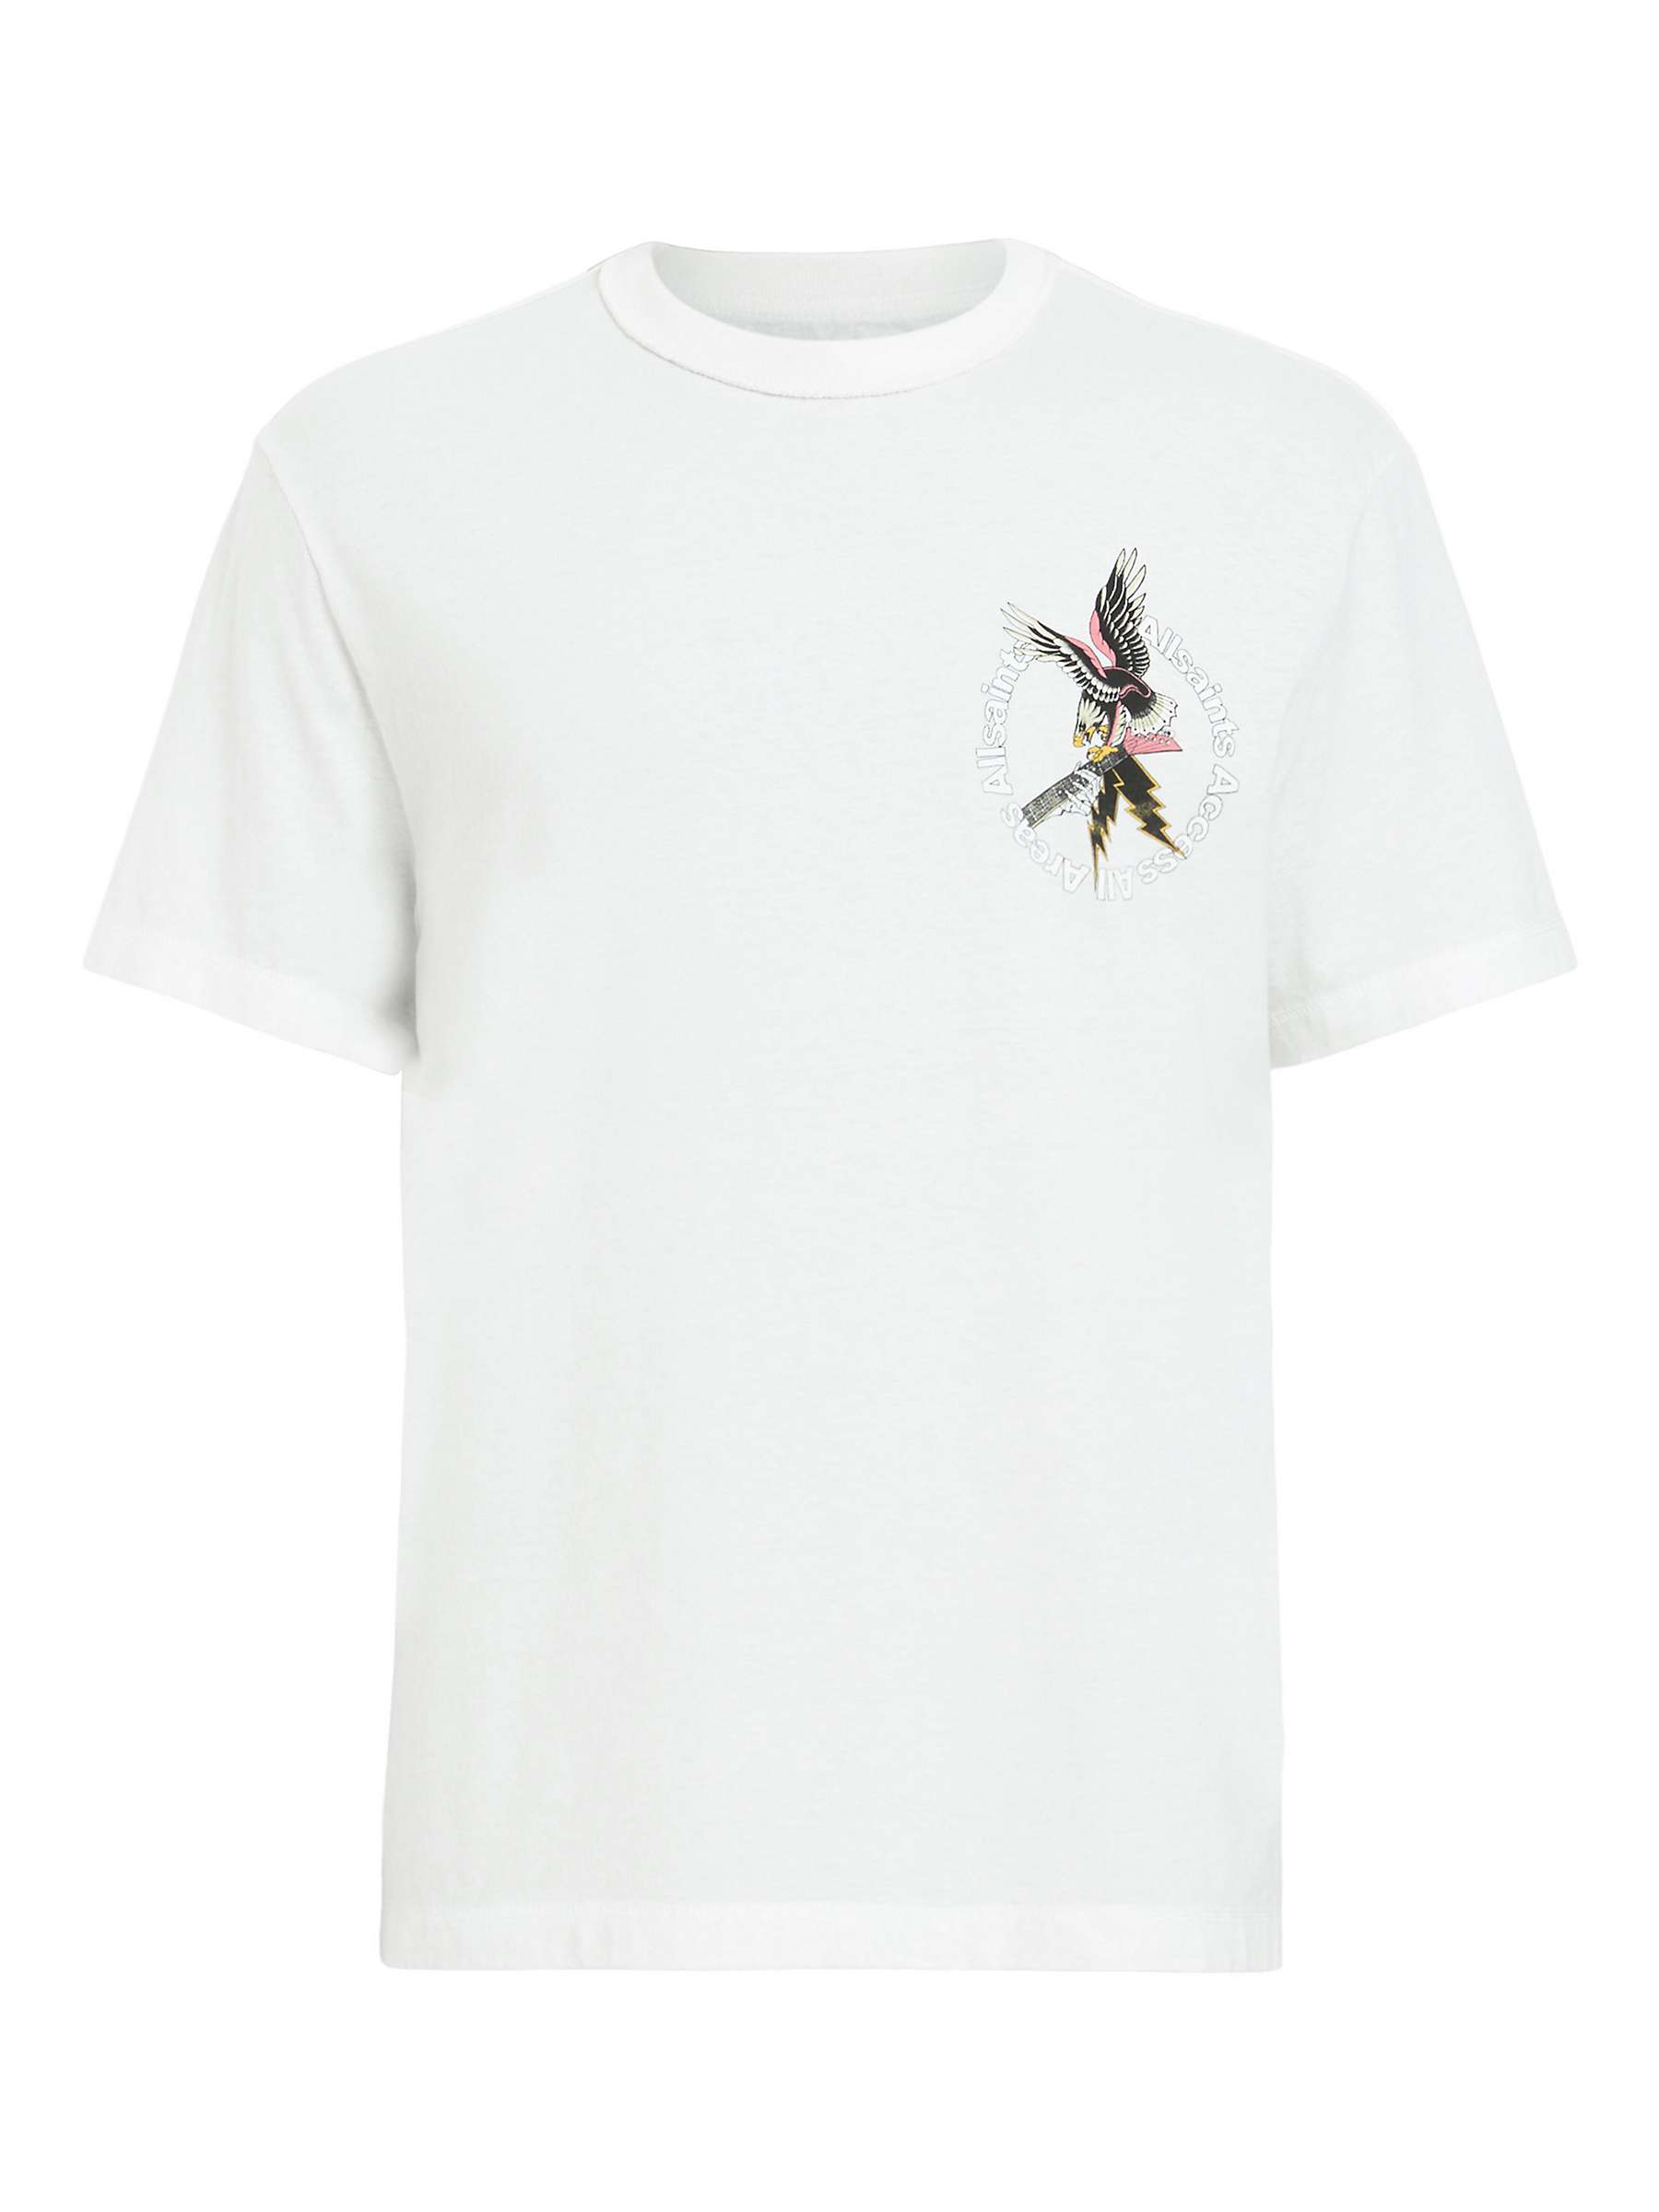 Buy AllSaints Fret Short Sleeve Crew T-Shirt, Chalk White Online at johnlewis.com